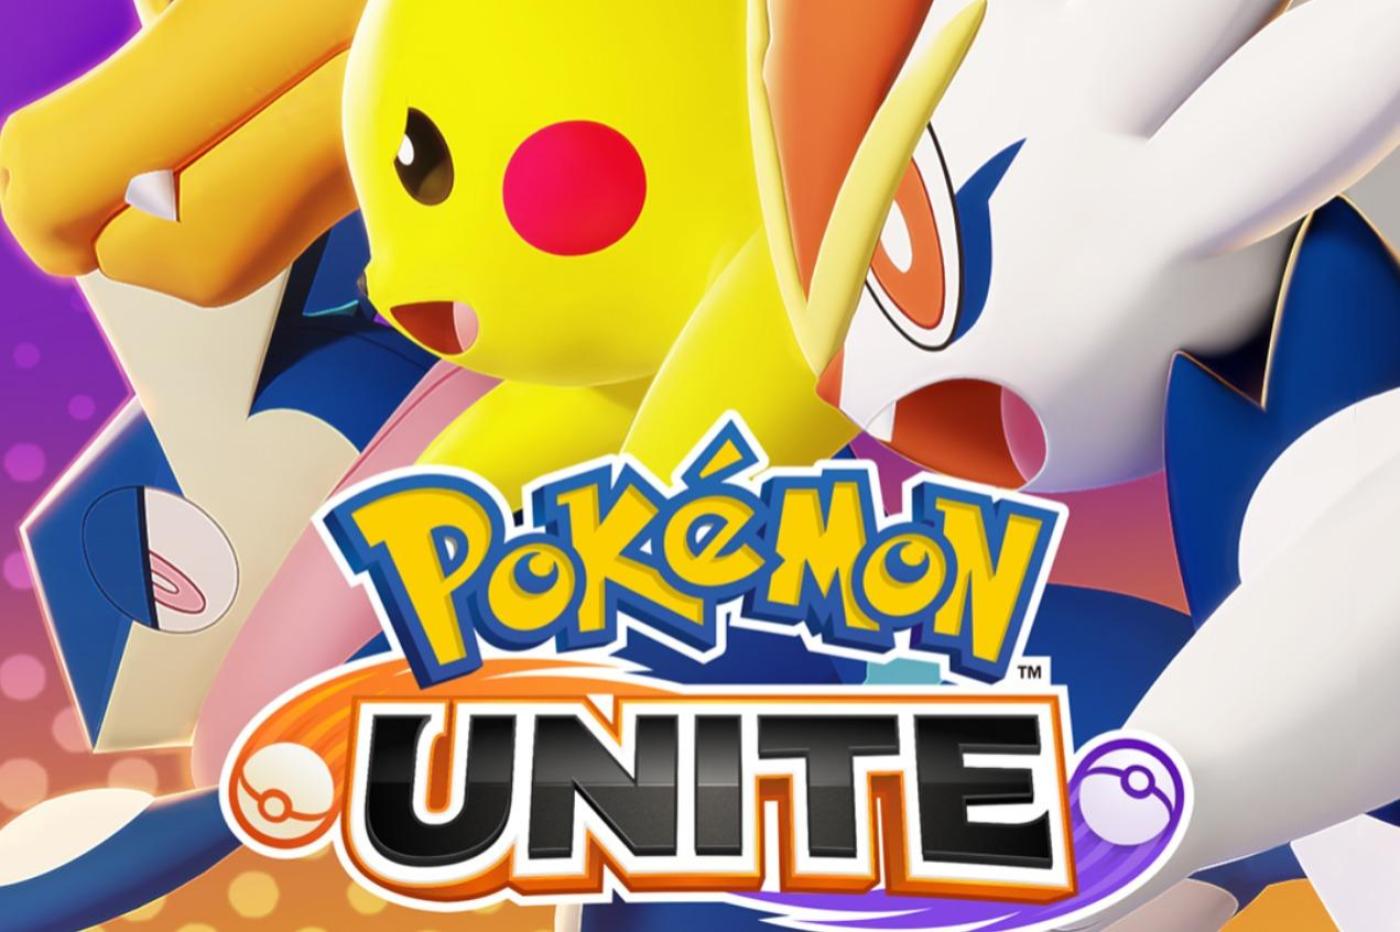 Pokemon Unite finalmente está disponible en iOS y Android